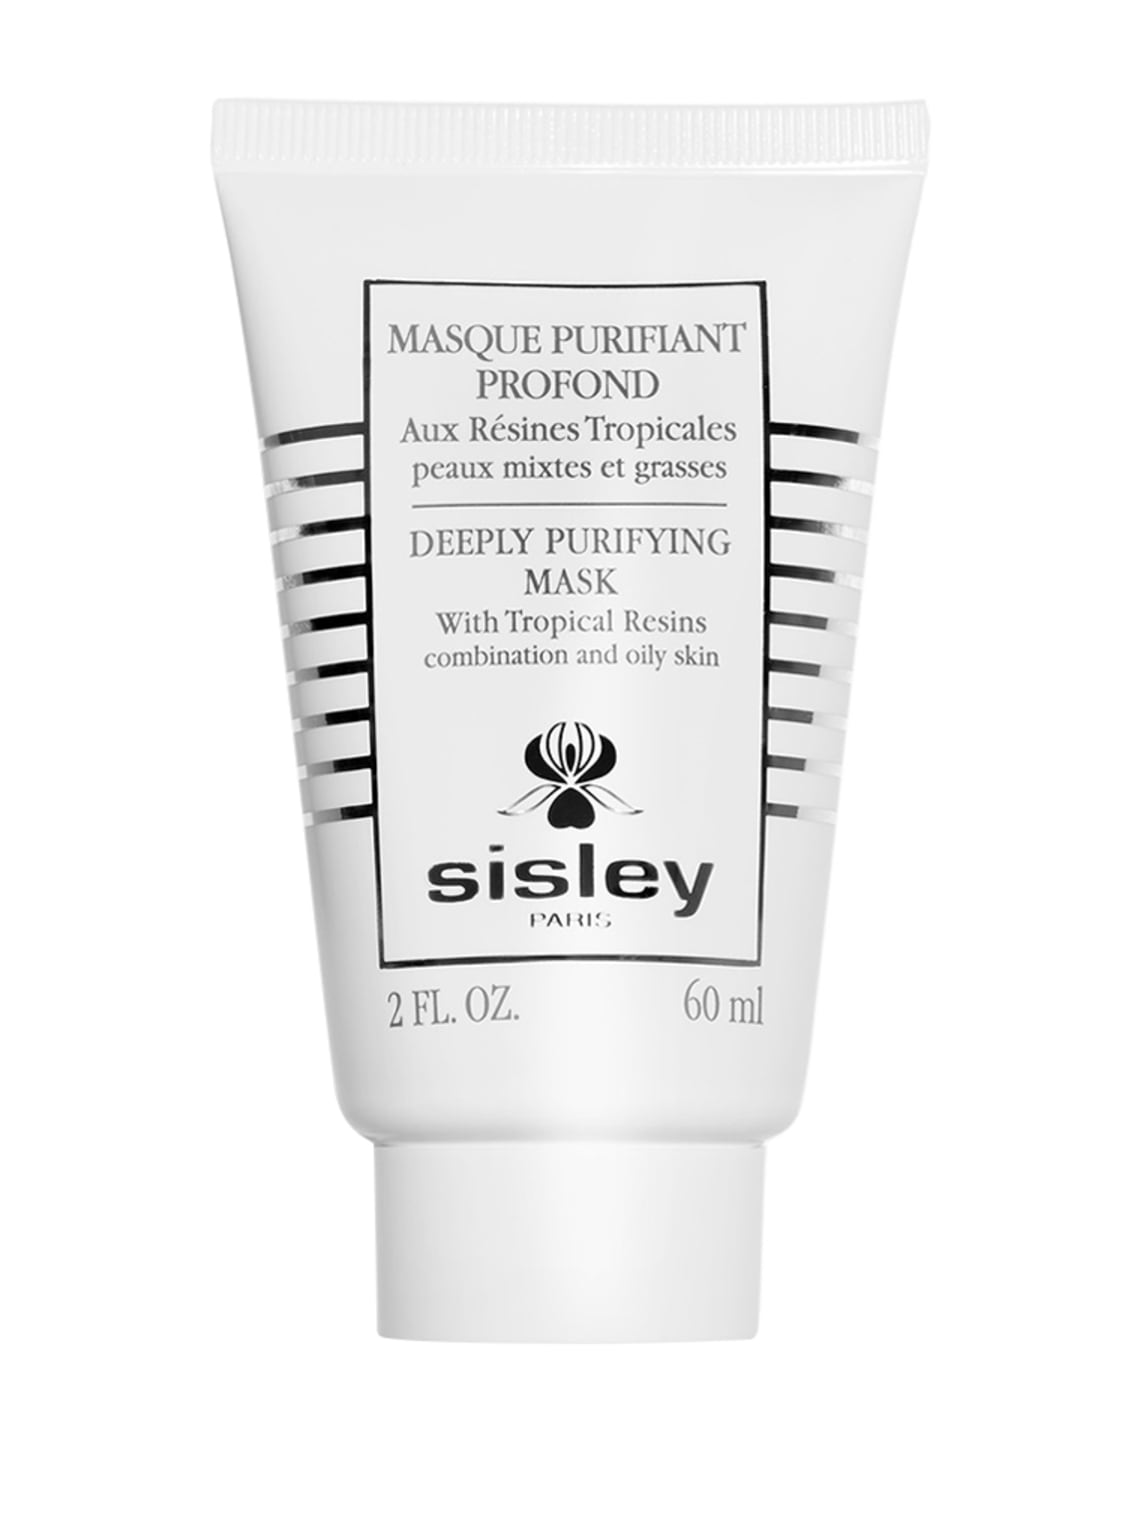 Sisley Paris Masque Purifiant Profond Tiefenreinigende Maske 60 ml von sisley Paris